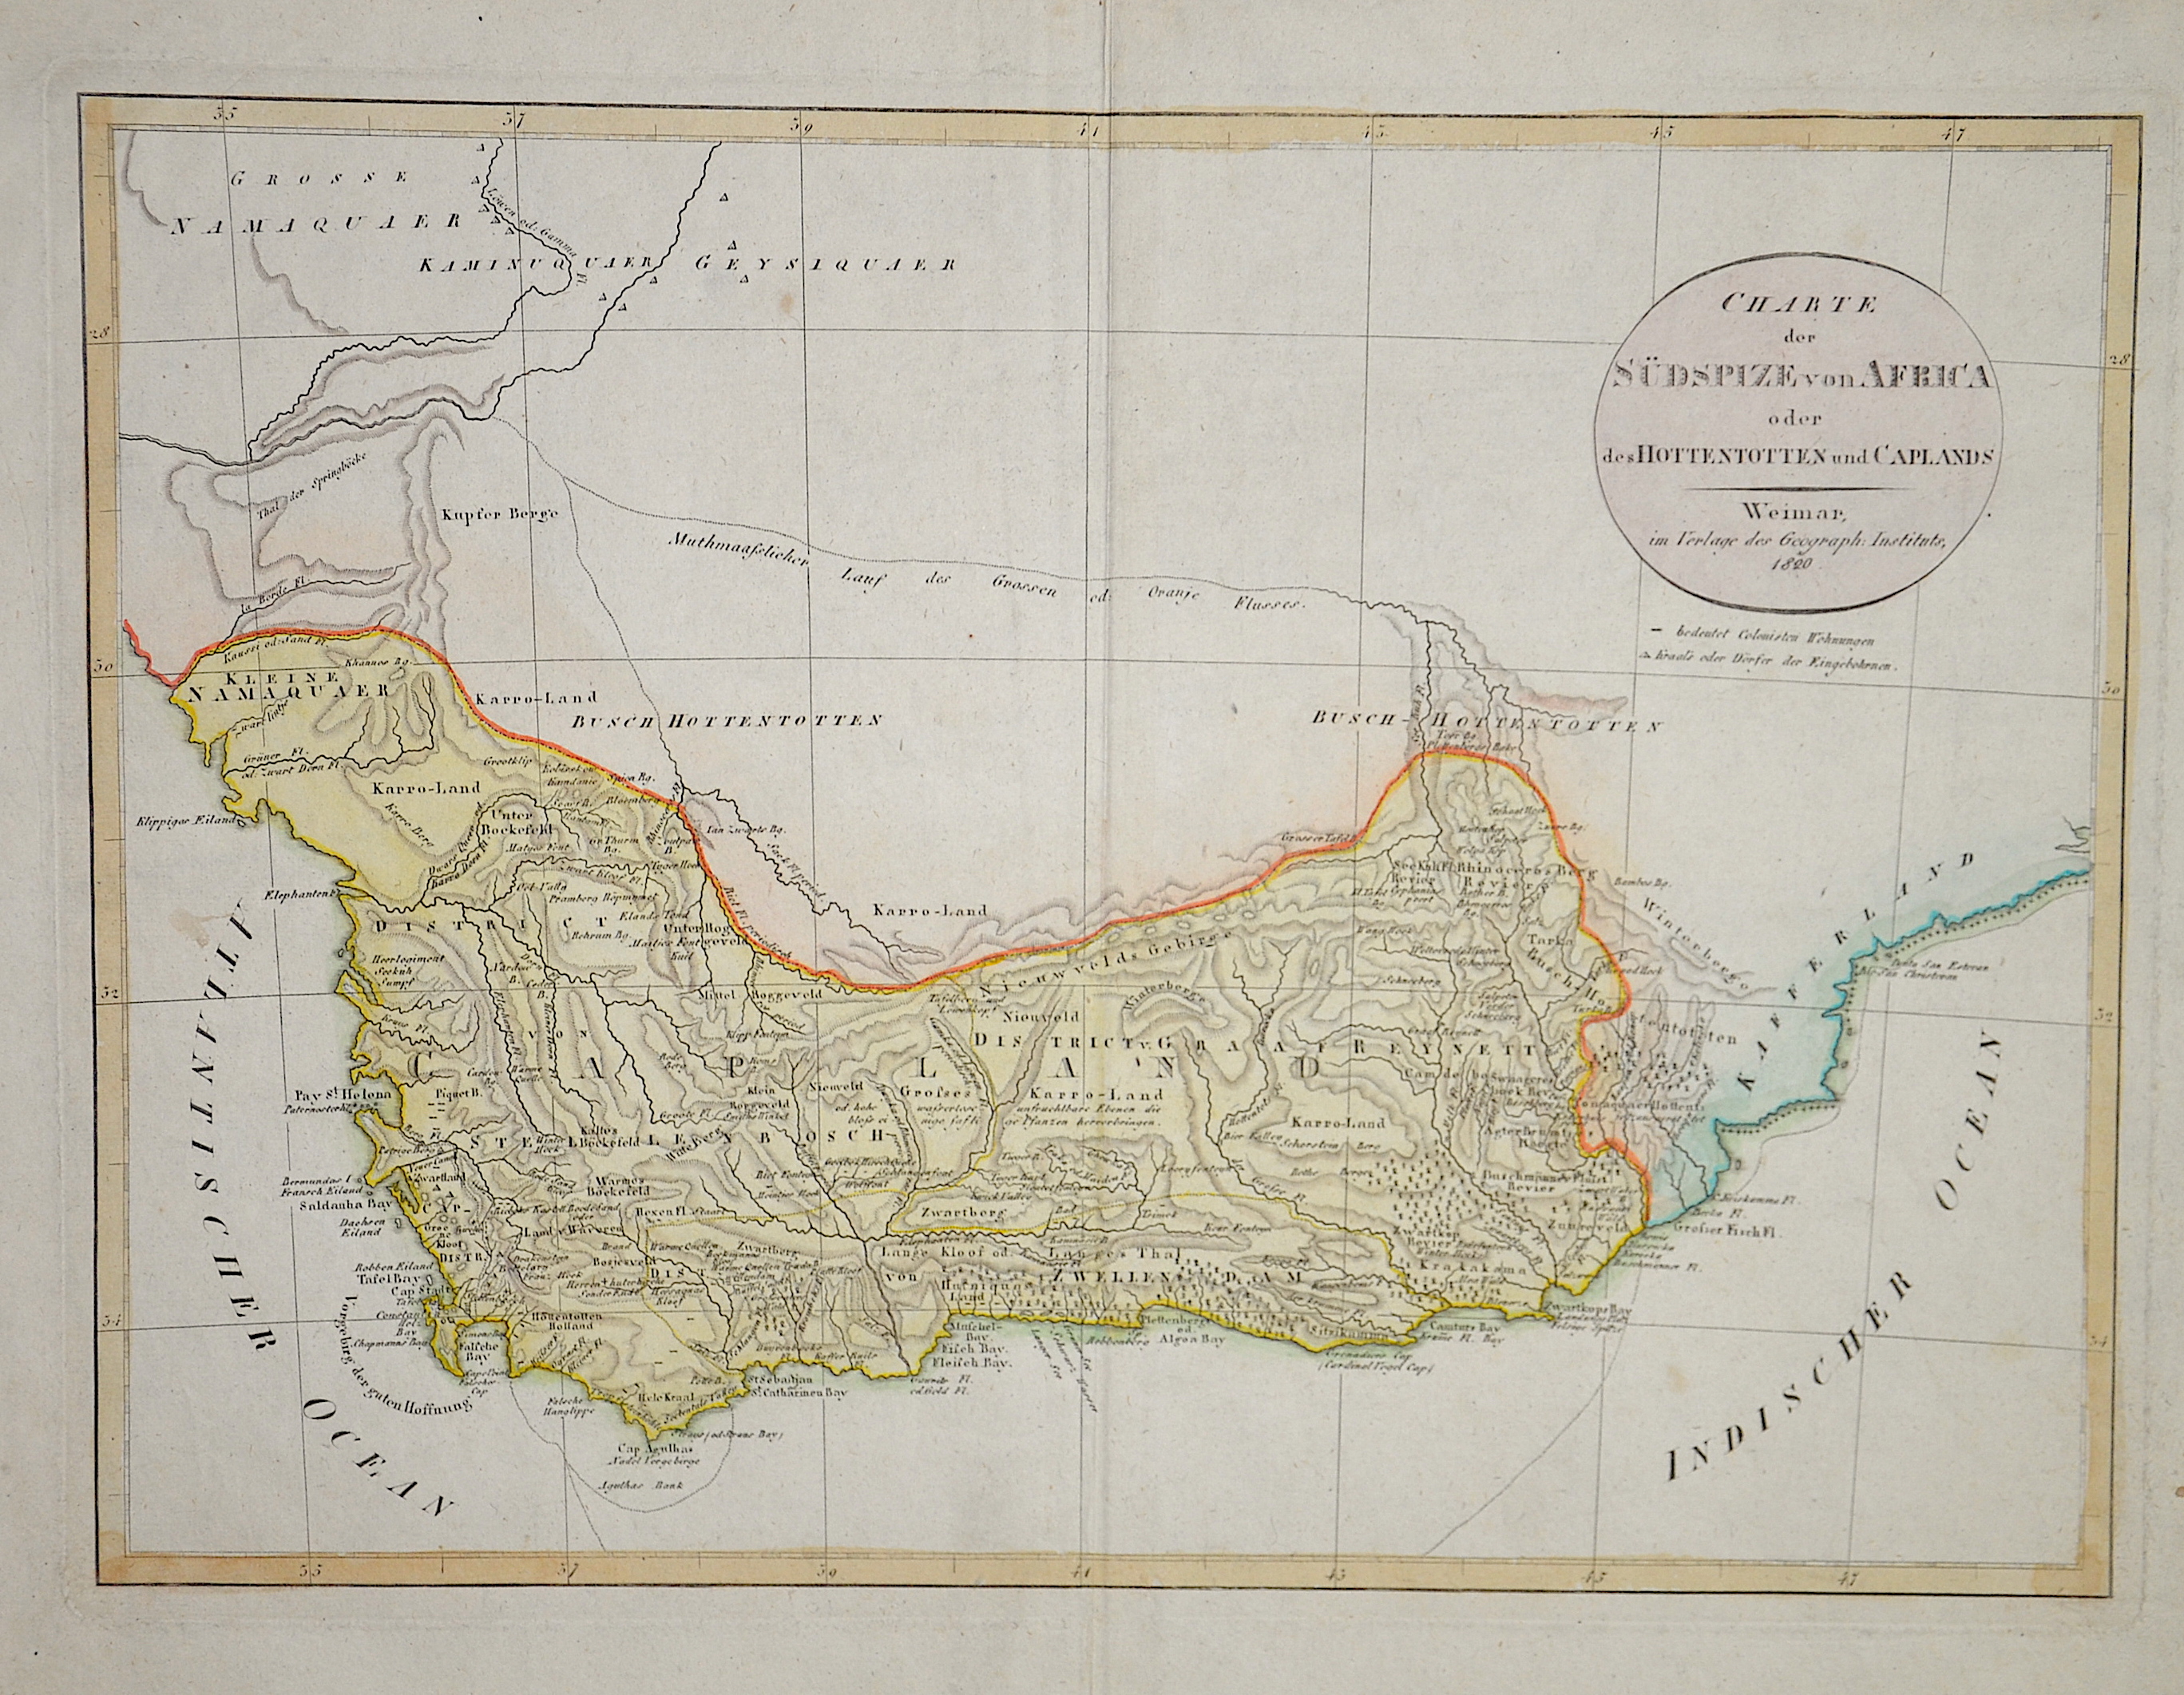 Güssefeld F.I. Charte der Südspize von Africa oder des Hottentotten und Caplands